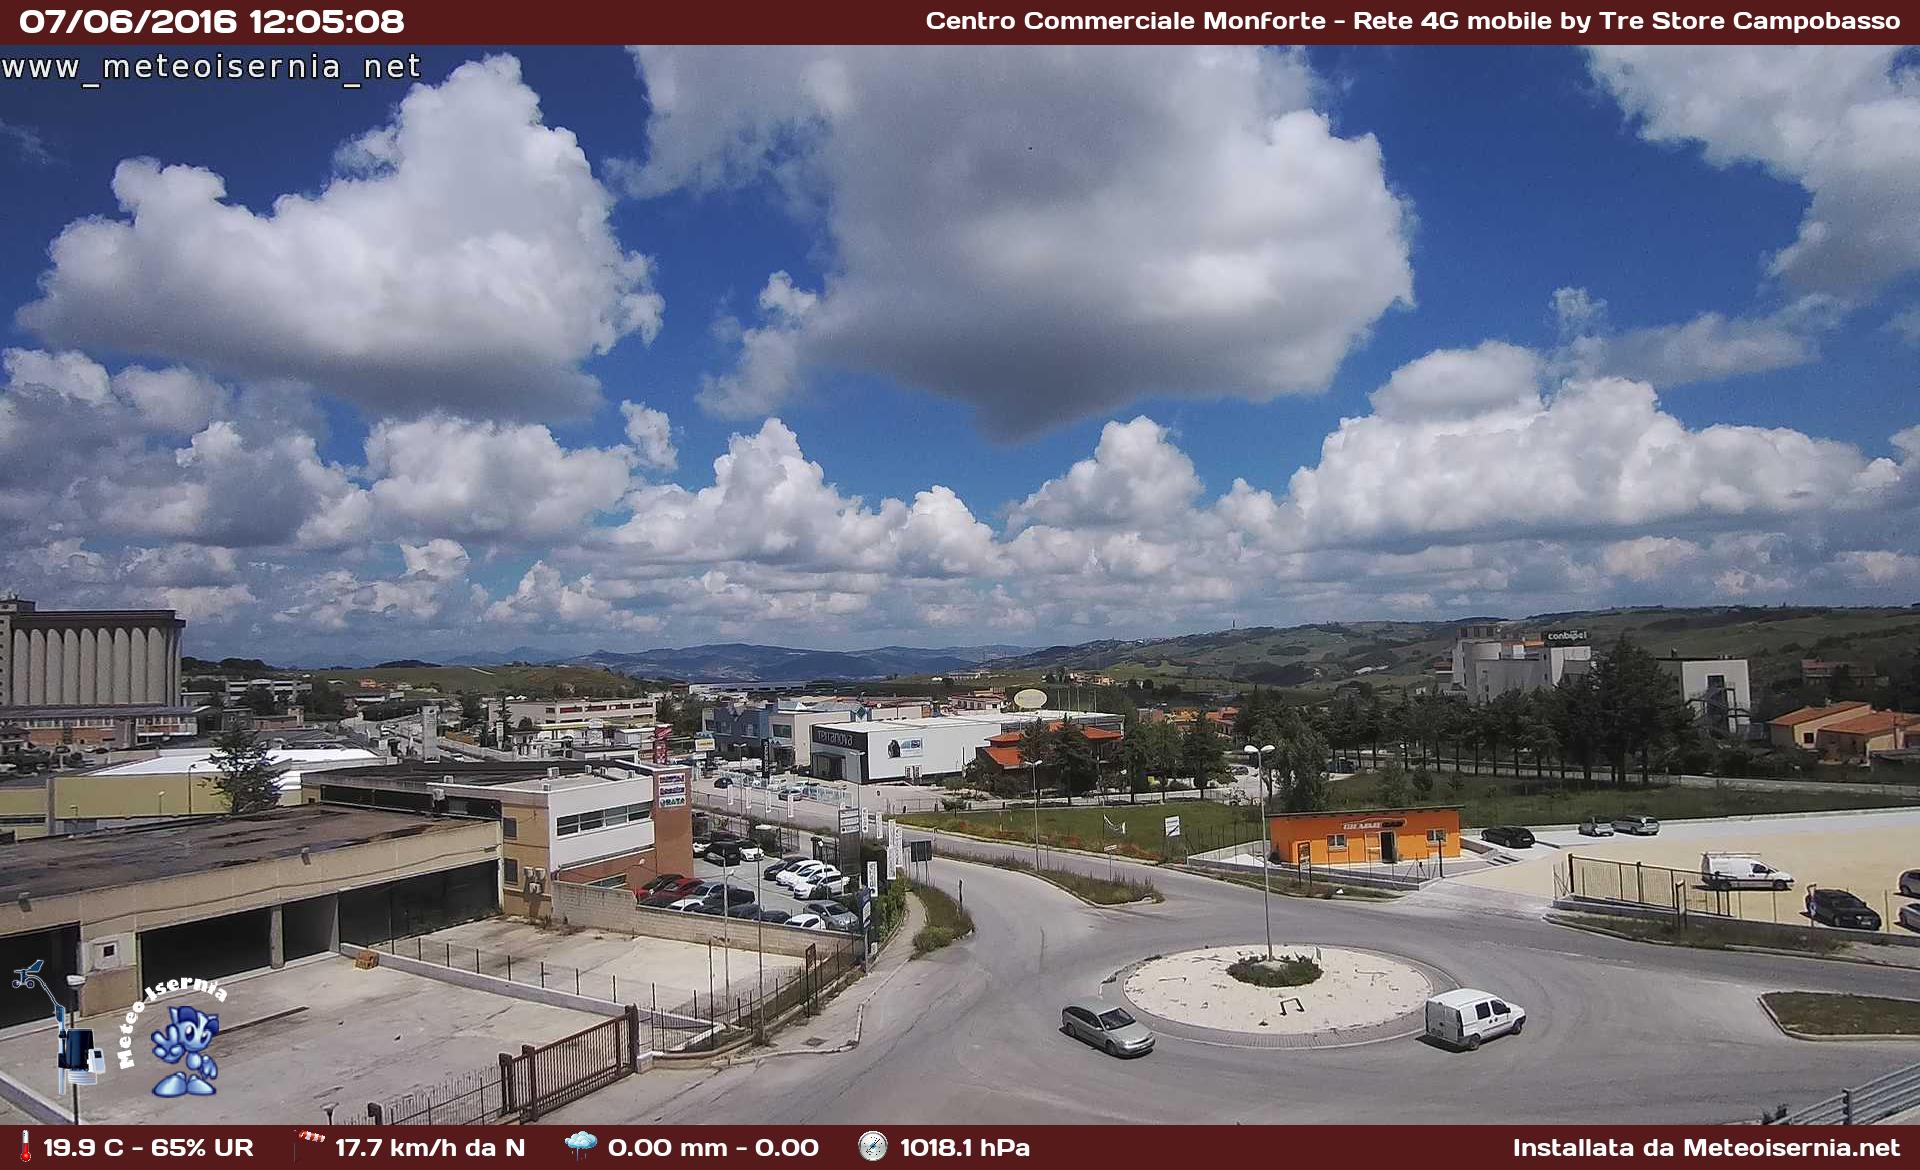 Webcam Meteo Turistica di Campobasso Centro